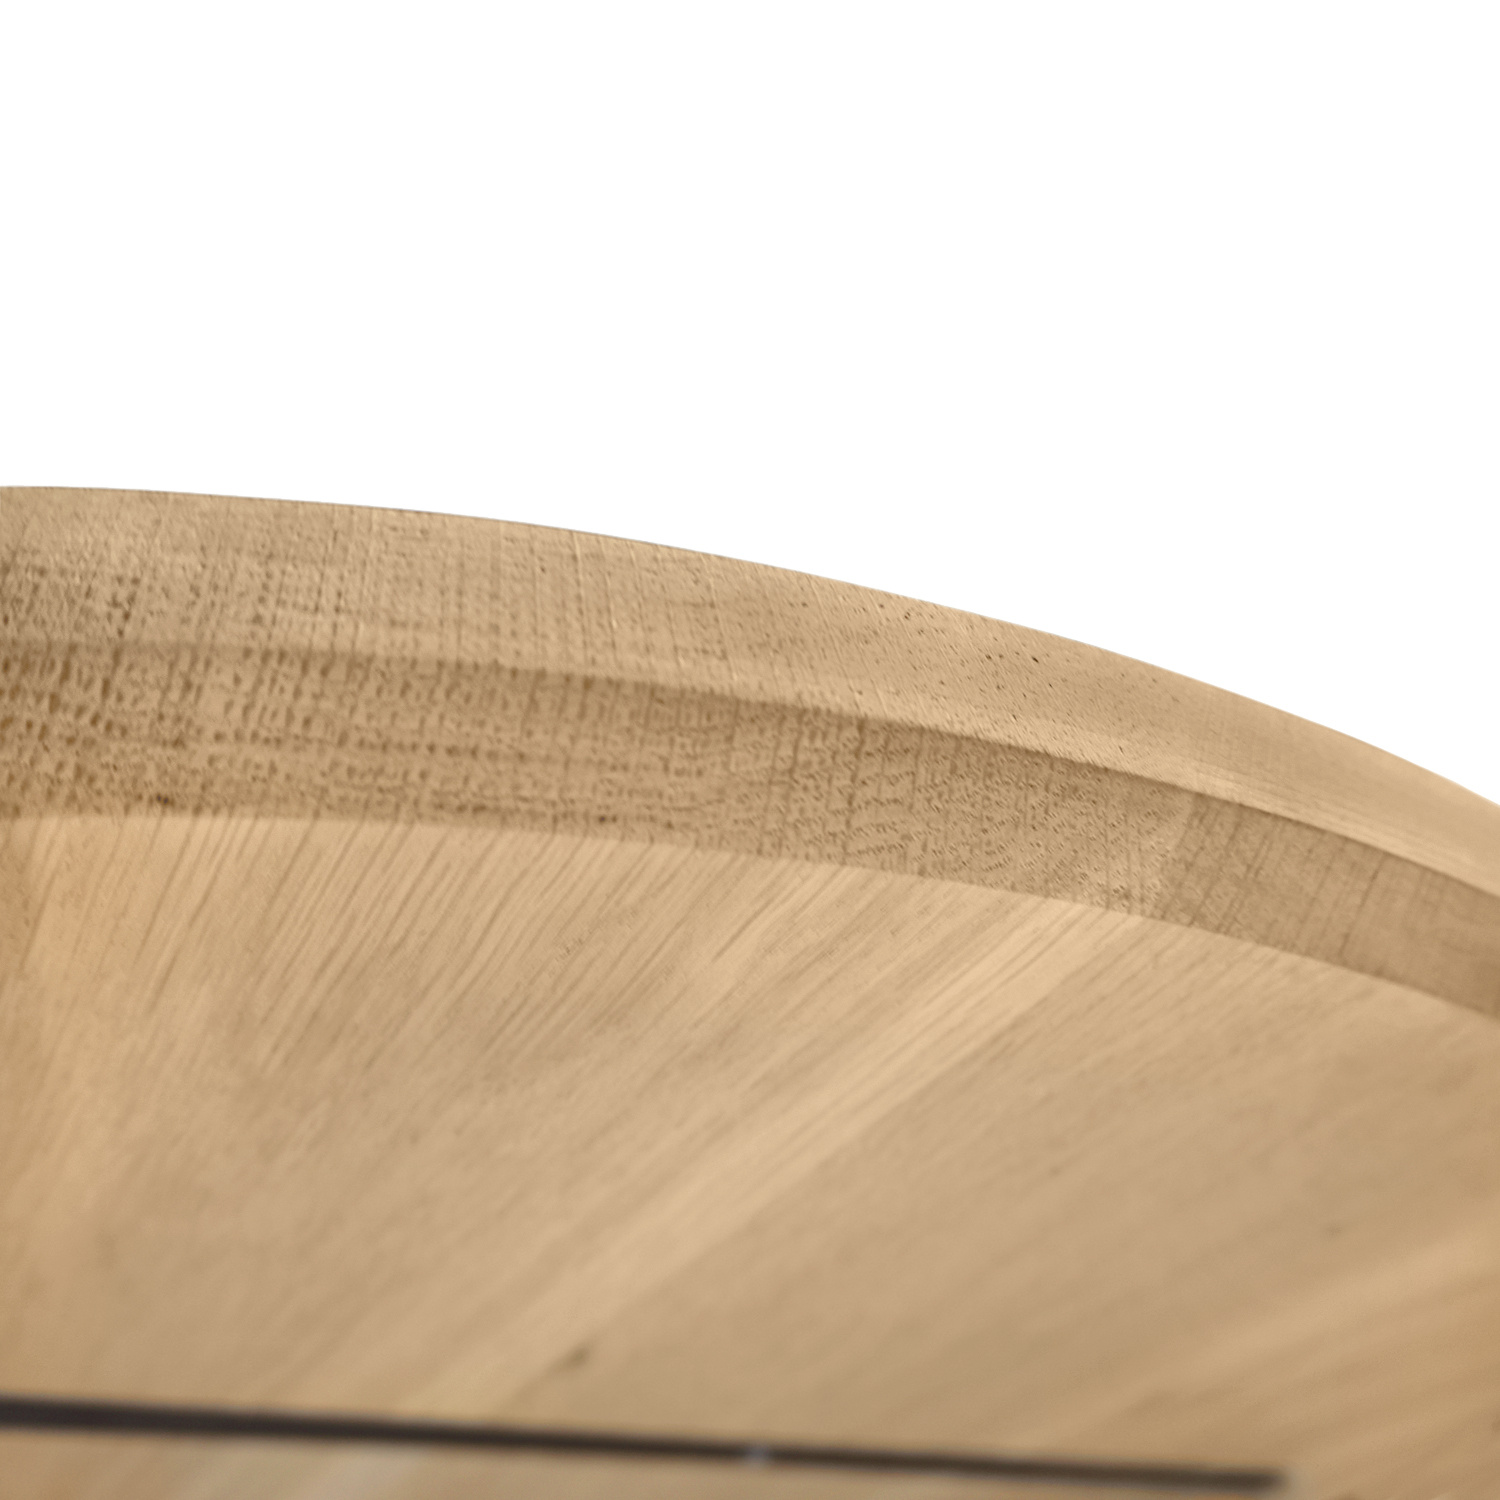  Rond eiken tafelblad op maat - 3 cm dik (1-laag) - extra rustiek Europees eikenhout - met extra brede lamellen (circa 14-20 cm) - verlijmd kd 8-12% - diameter van 40 tot 117 cm